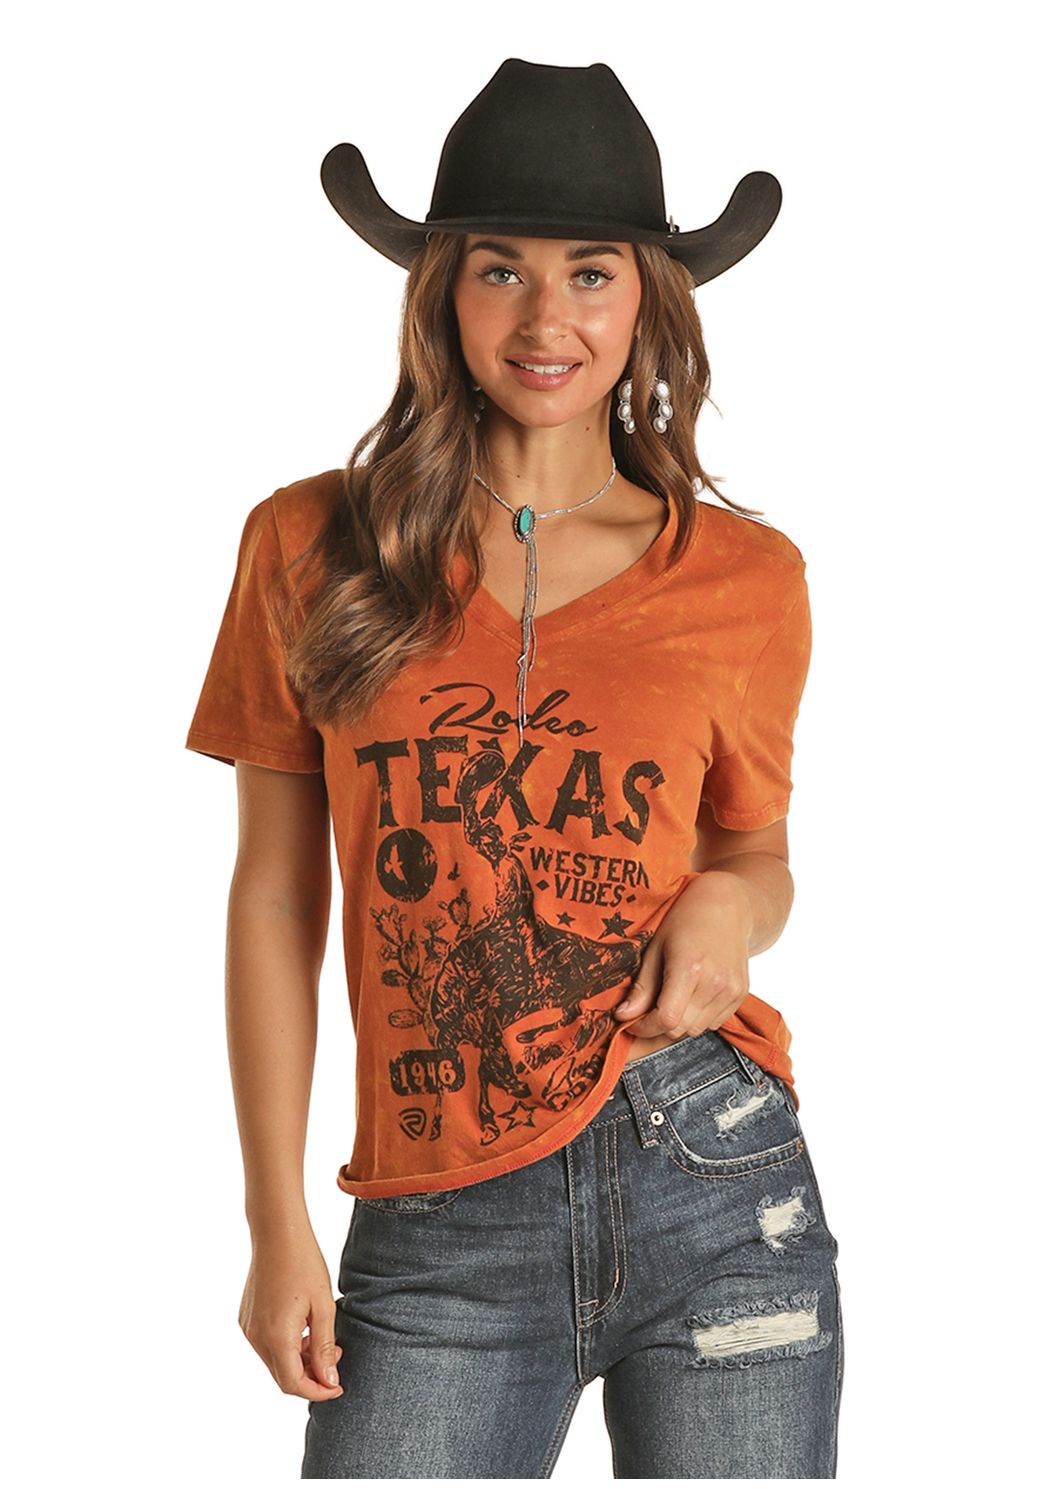 Paradouro CountryT-Shirt Feminina Texas Heard